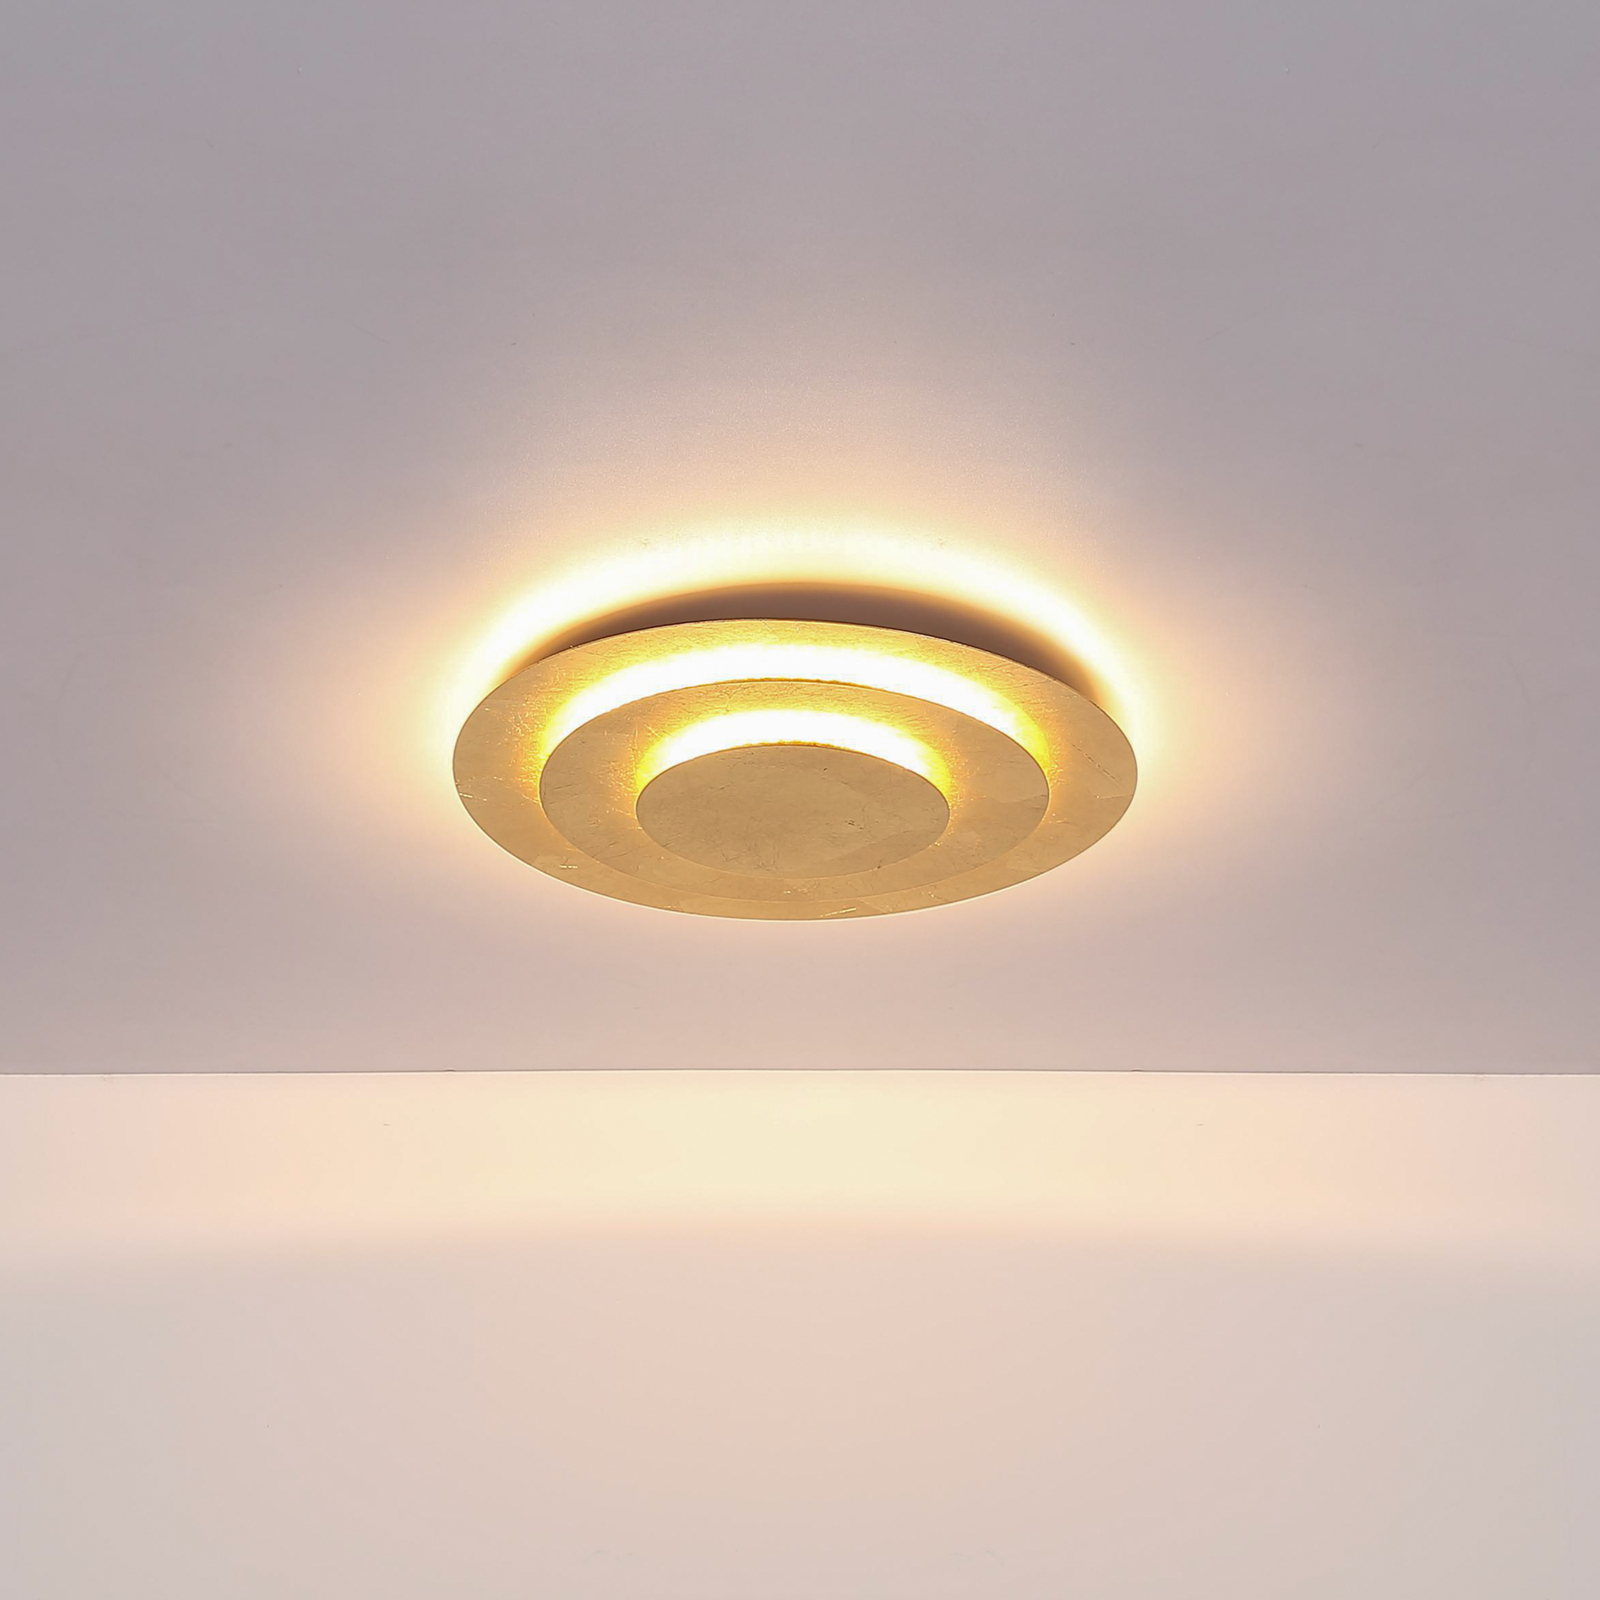 Lampa sufitowa LED Heda, Ø 35 cm, w kolorze złotym, metalowa